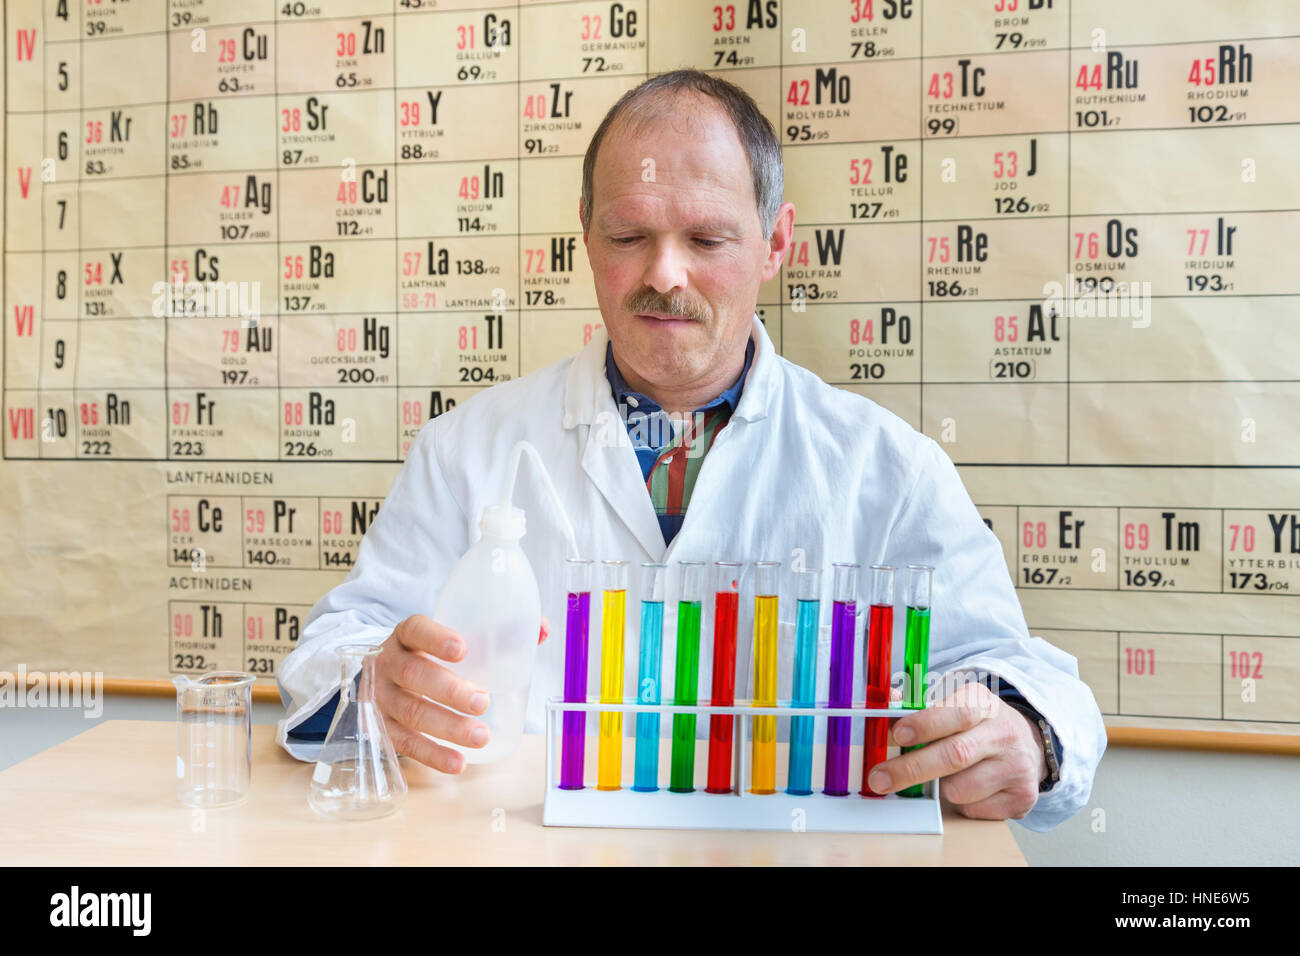 Chemist in lab coat couleur de remplissage des tubes à essai près de tableau périodique Banque D'Images